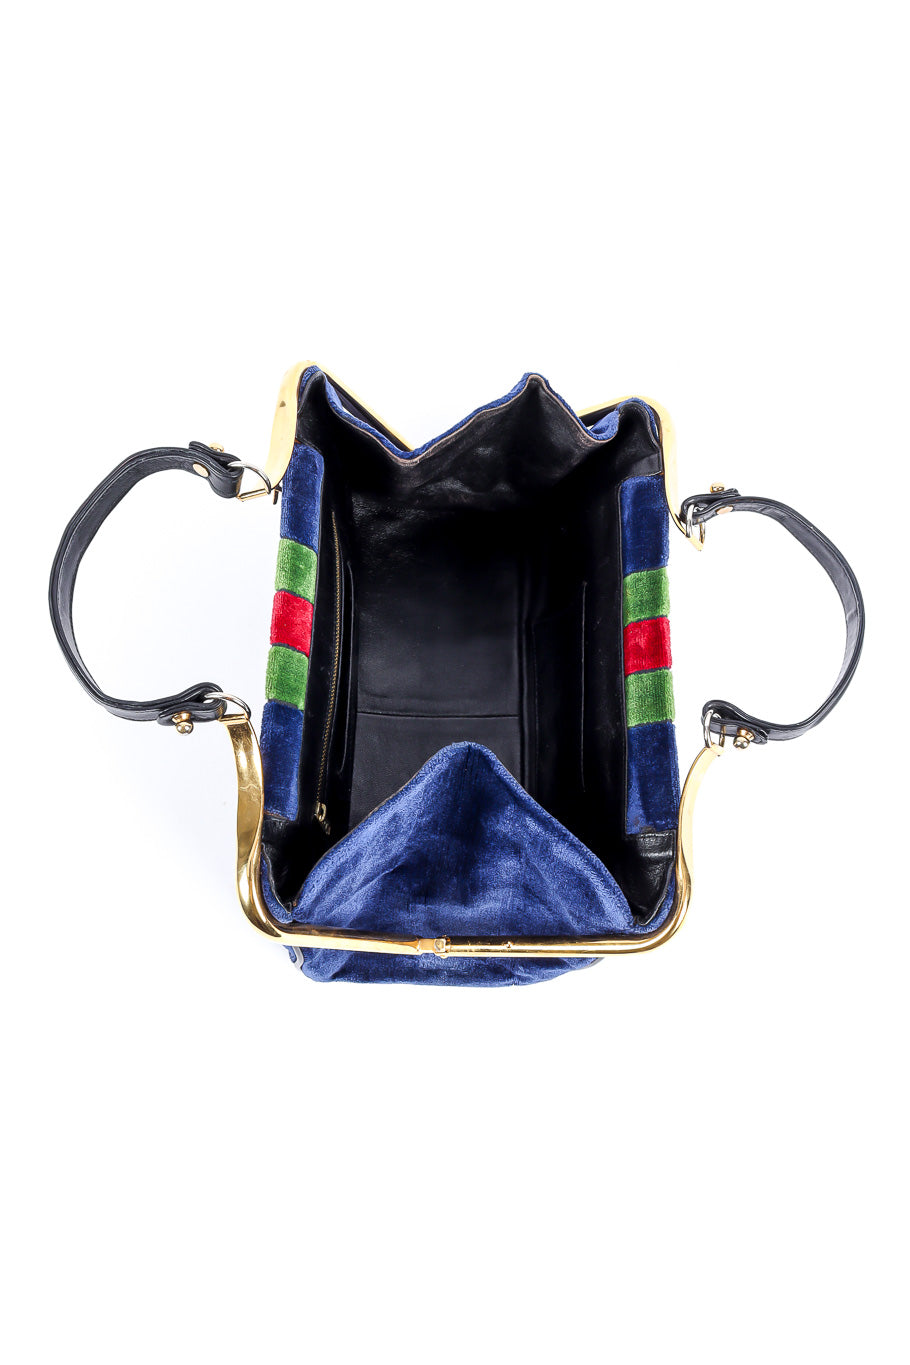 Roberta Di Camerino velvet stripe frame bag product shot of interior @recessla